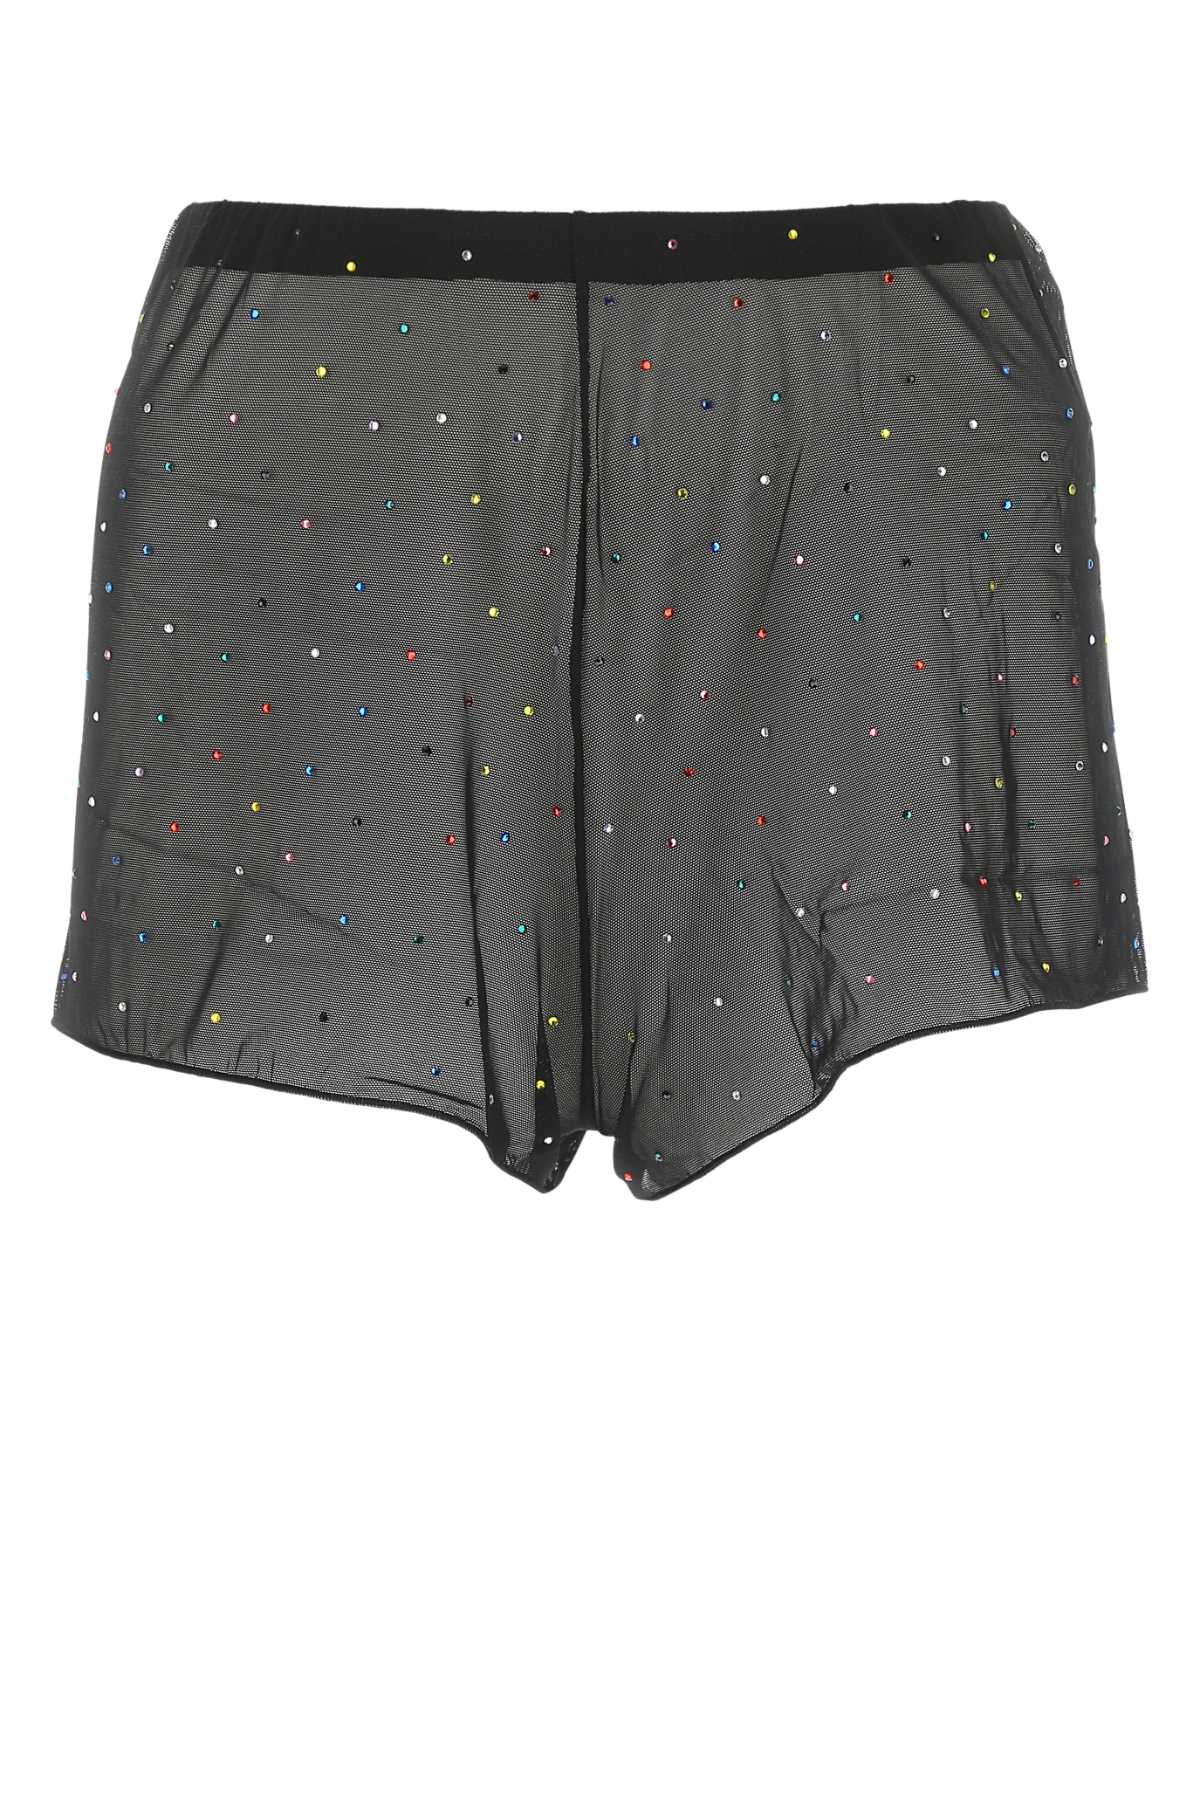 Embellished Stretch Mesh Lingerie Shorts